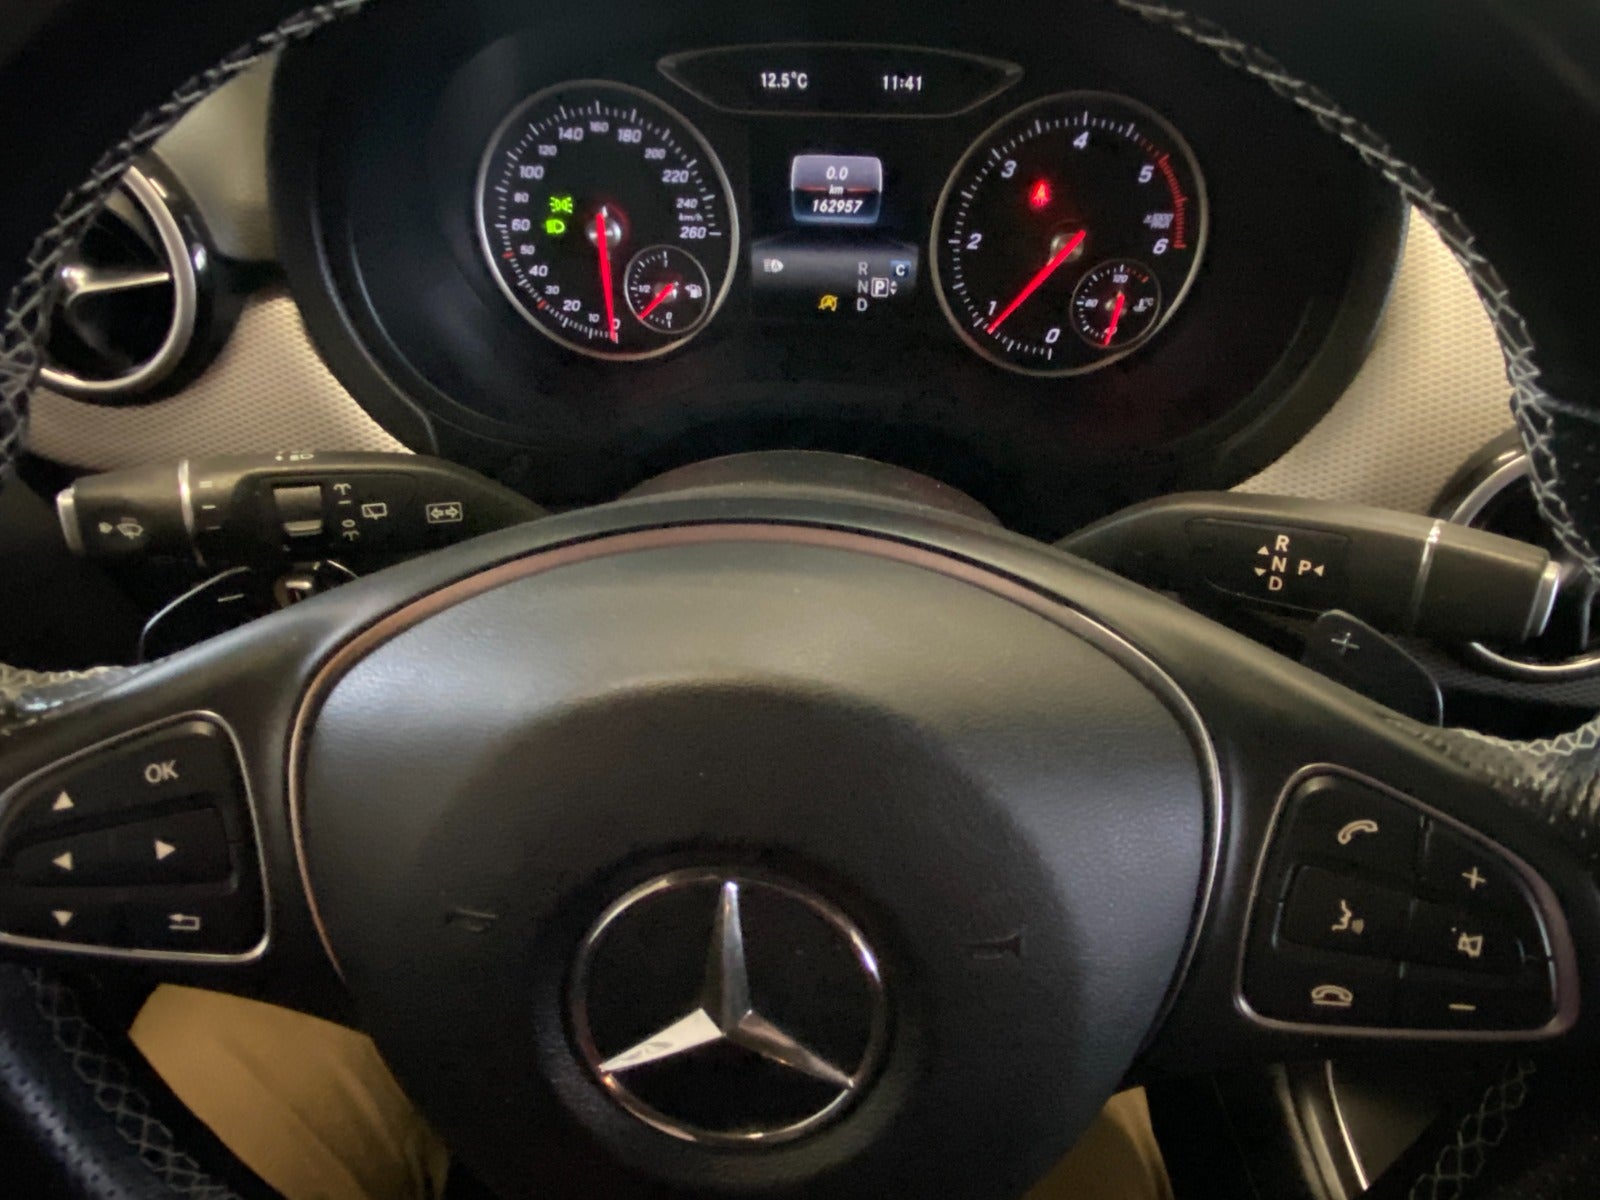 Mercedes B220 d 2018